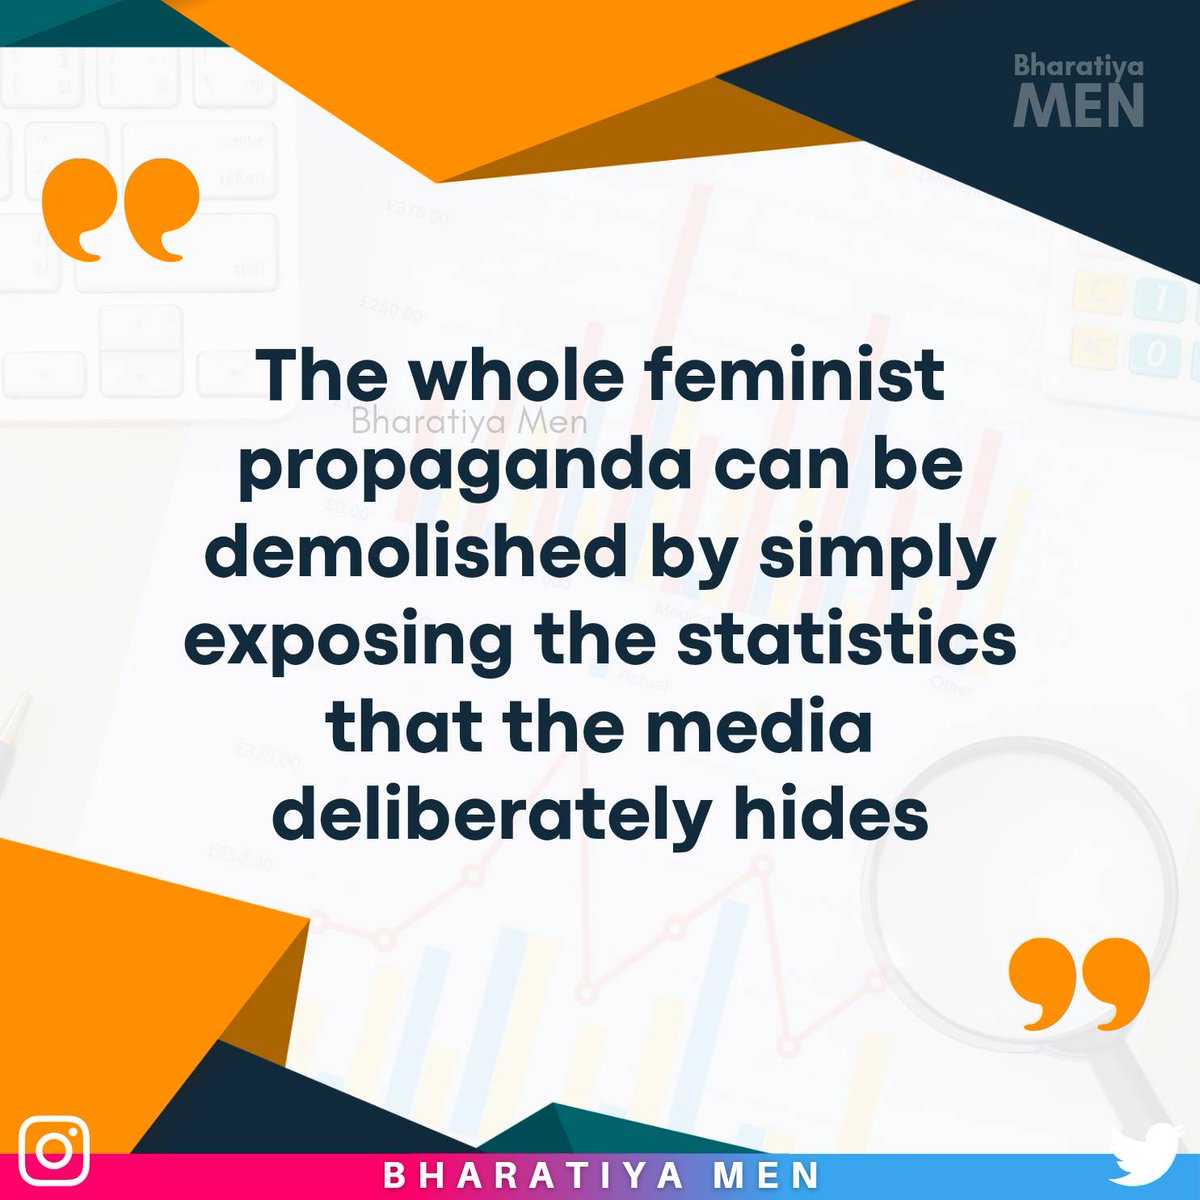 #SoldOutMedia #FeminismIsCancer #Men #Misandry